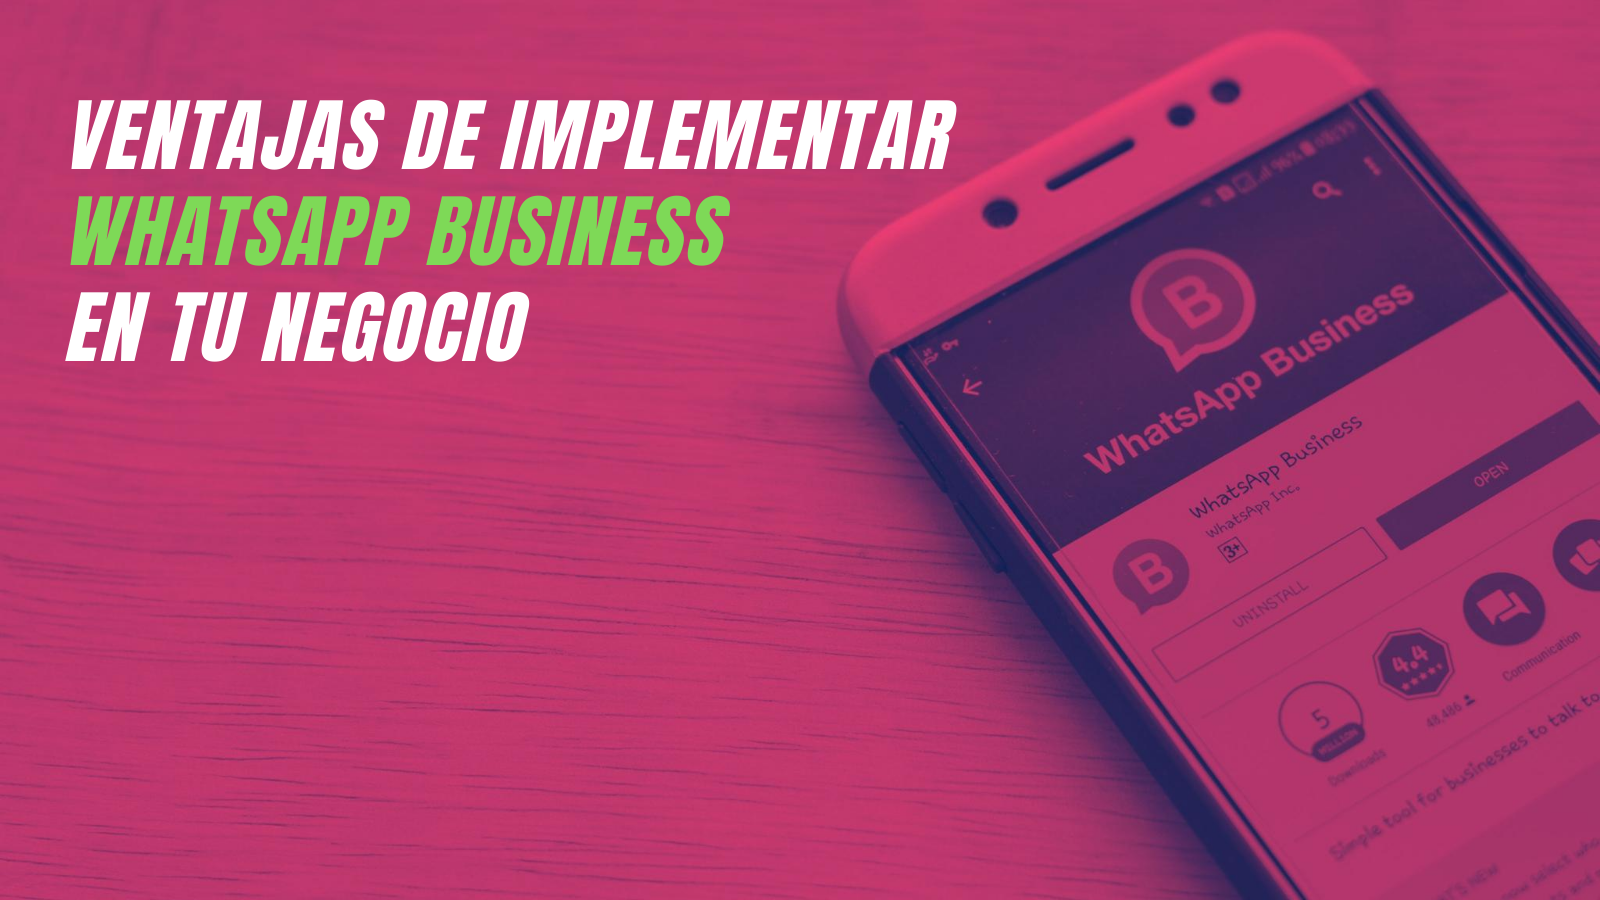 Cu Les Son Las Ventajas De Implementar Whatsapp Business En Tu Negocio